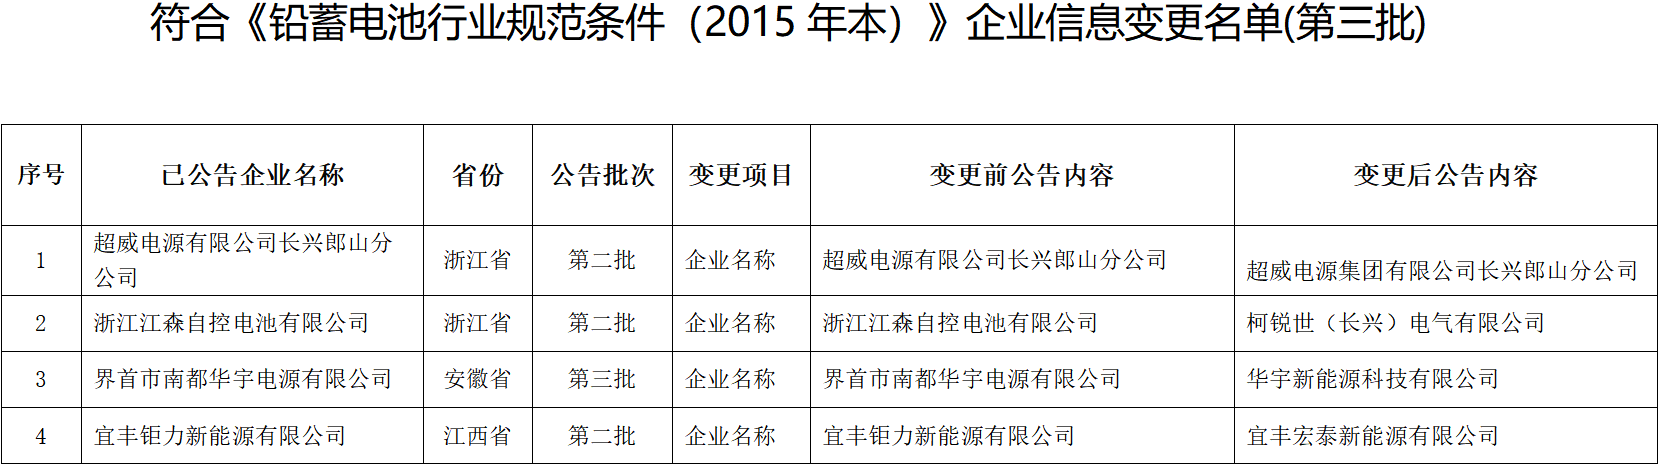 符合《铅蓄电池行业规范条件（2015年本）》企业信息变更名单(第三批)